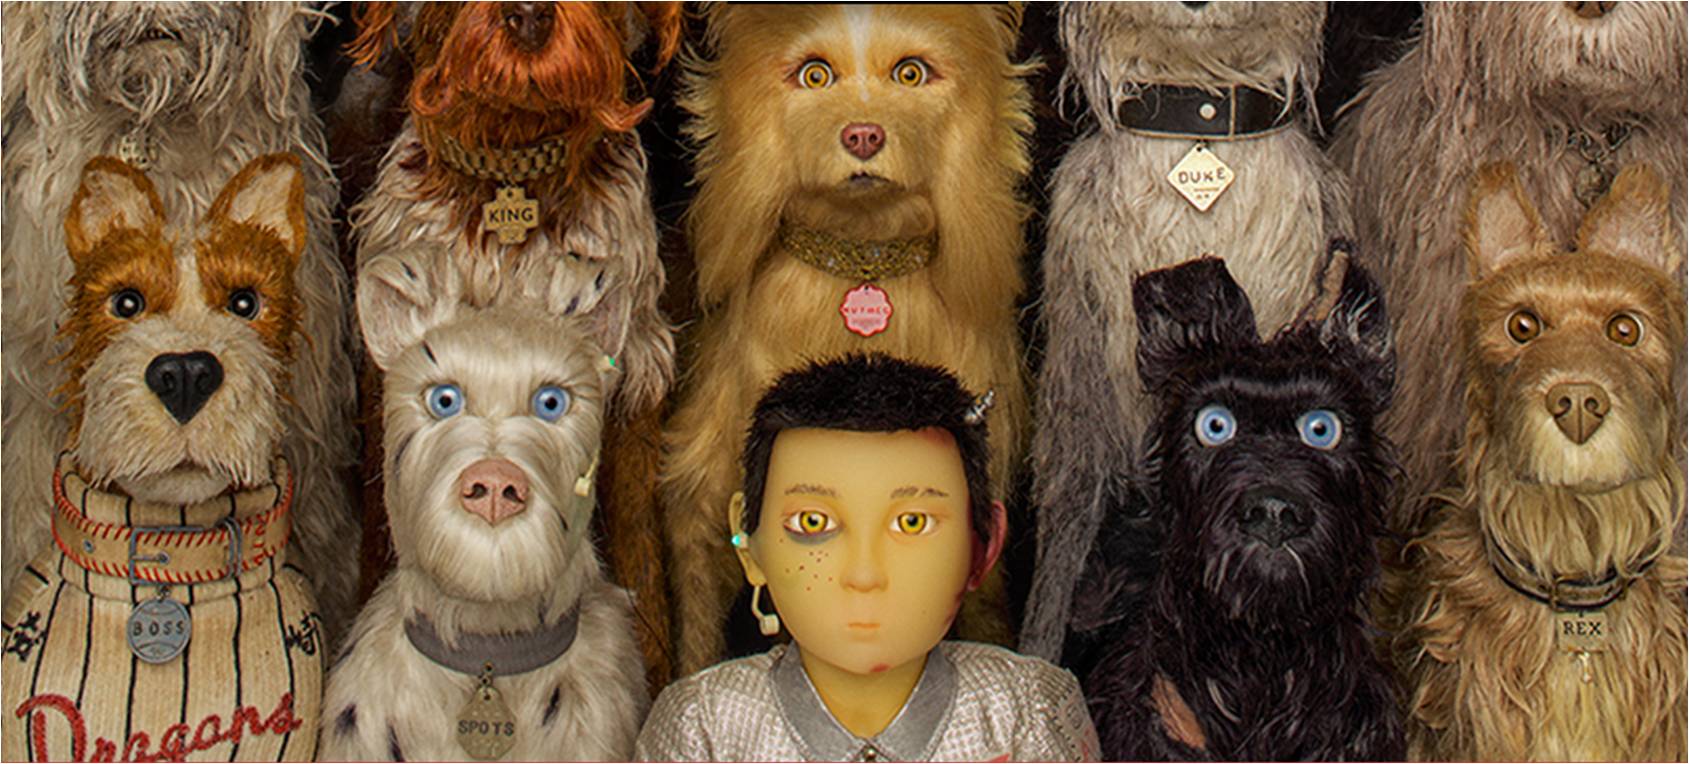 Isle of dogs es el primer filme de animación que abre el festival de Berlín.